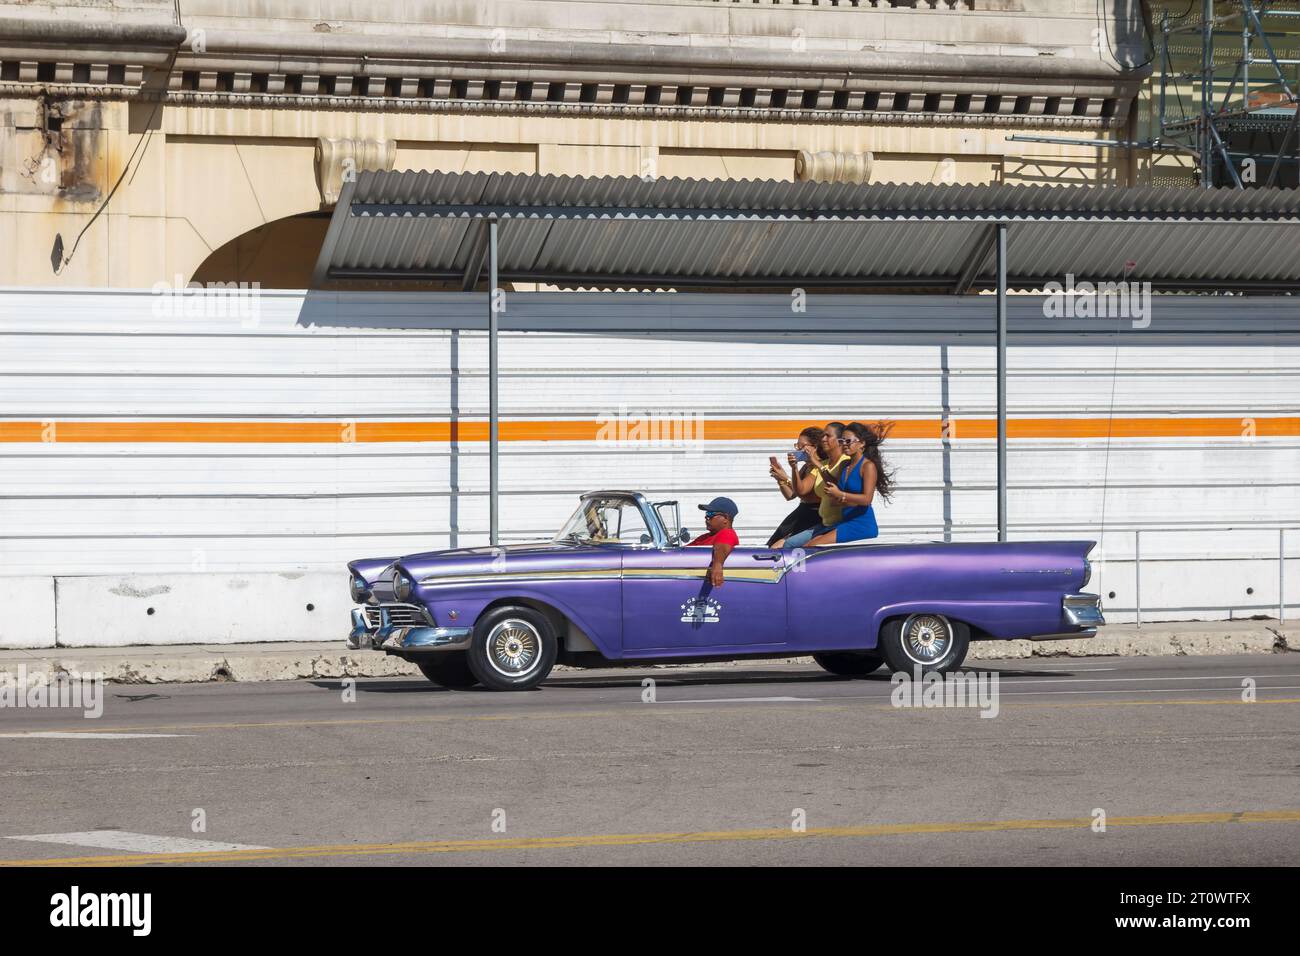 Les femmes de tourisme montent sur une voiture américaine vintage couvrable dans la capitale. En arrière-plan, un ancien bâtiment est en reconstruction ou en revitalisation Banque D'Images